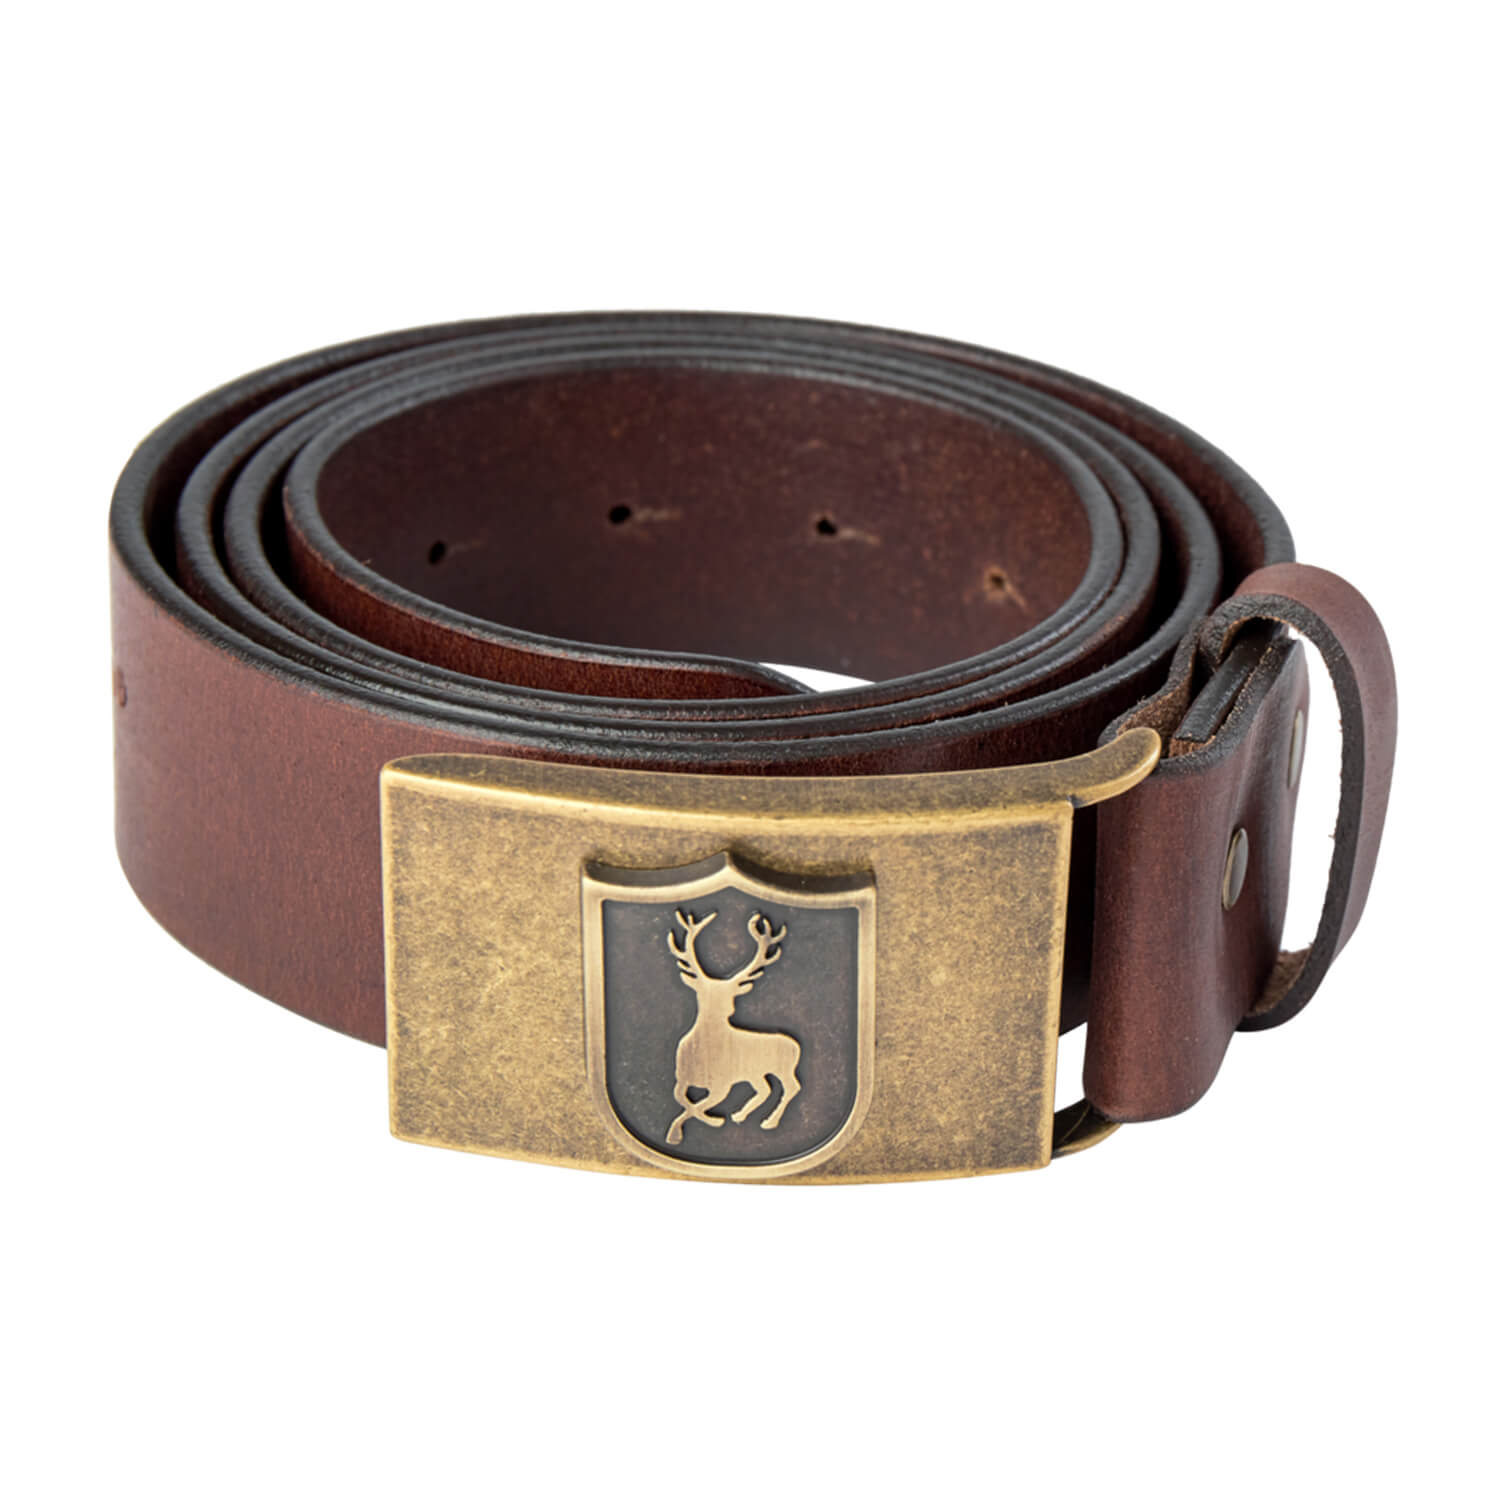 Deerhunter Leather Belt (Cognac brown) - Belts & Suspenders